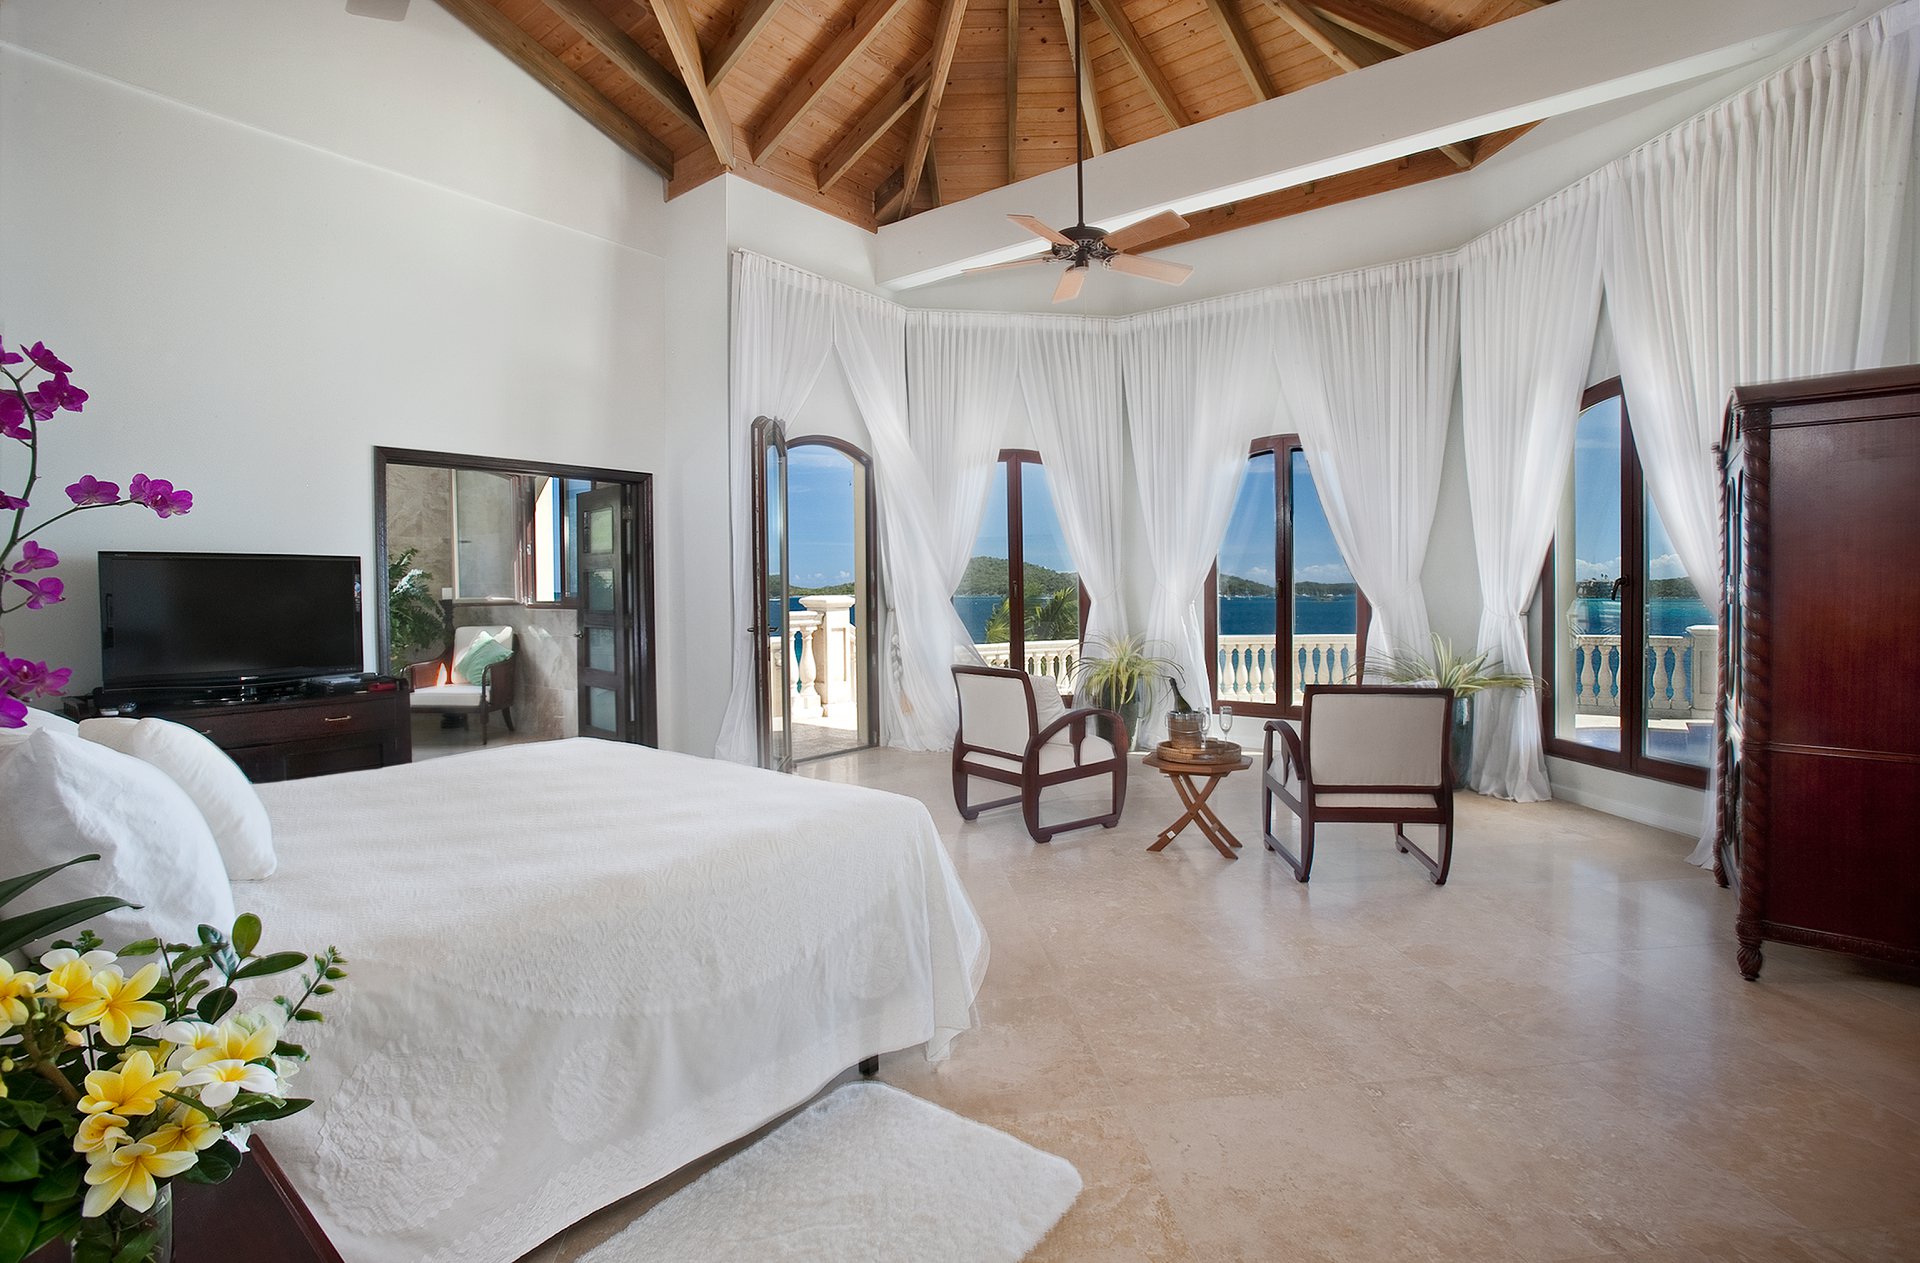 Master Bedroom of vacation villa rental Villa Serenita